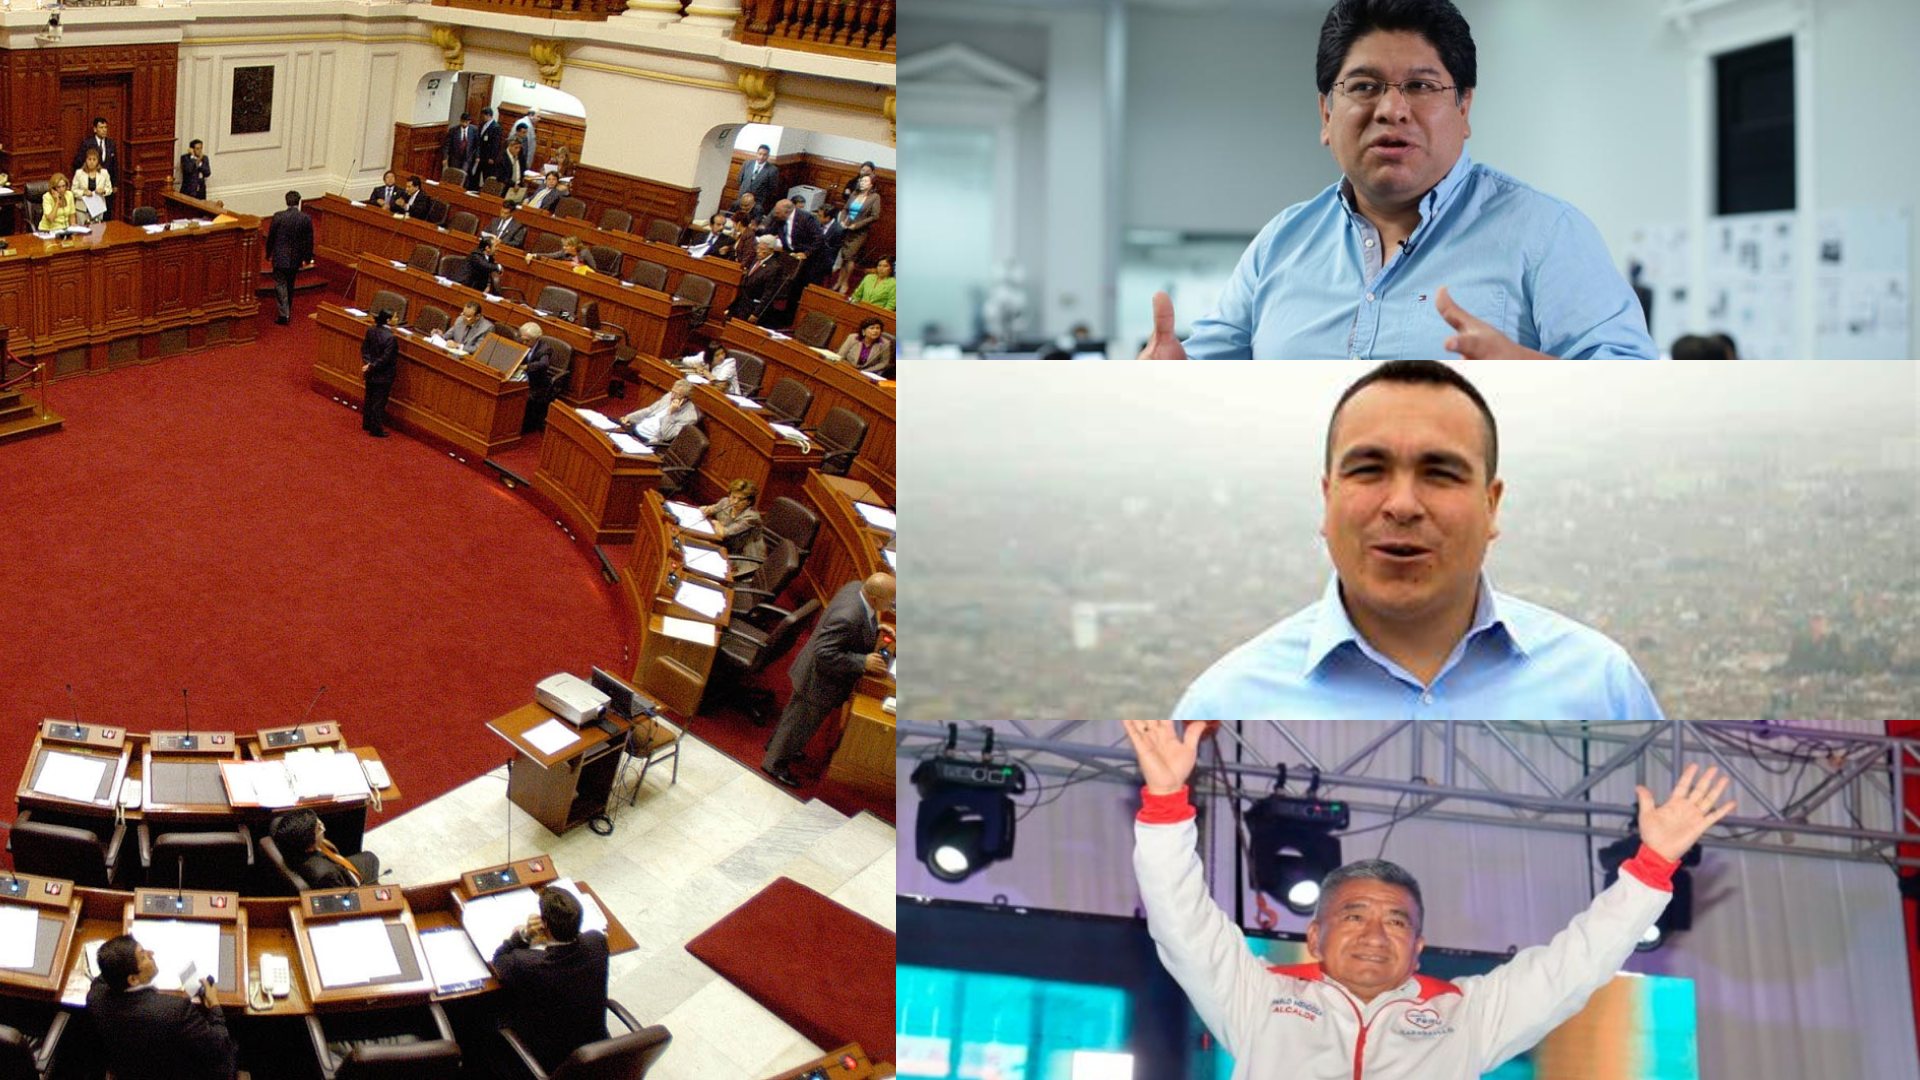 Alcaldes de Lima Norte sobre adelanto de elecciones: “Rechazamos al Congreso por no escuchar al pueblo”